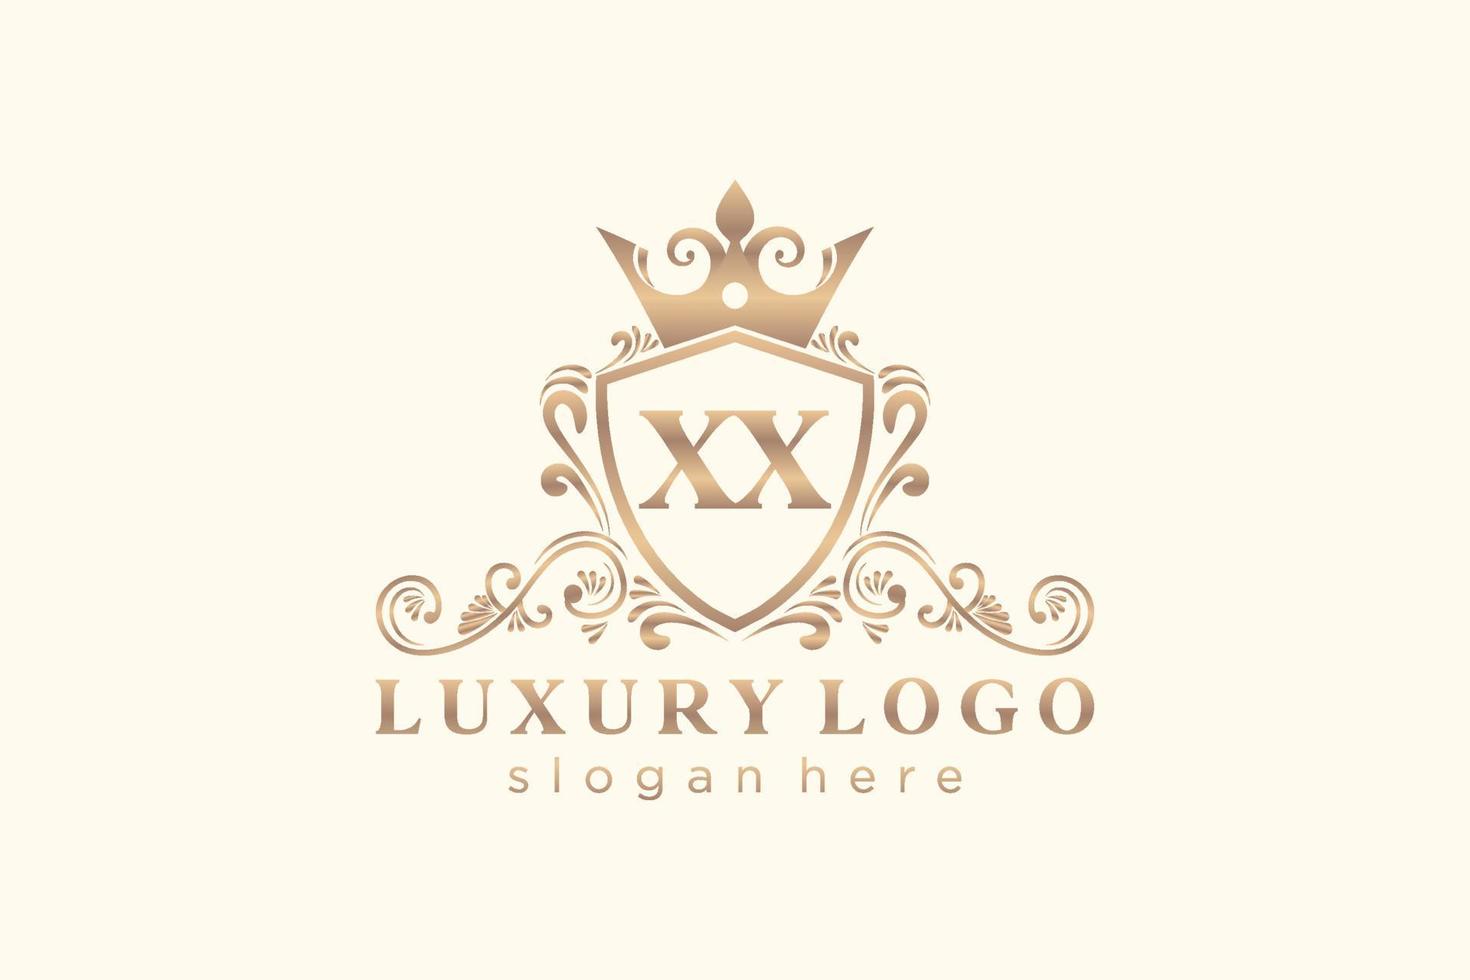 modelo de logotipo de luxo real de letra xx inicial em arte vetorial para restaurante, realeza, boutique, café, hotel, heráldica, joias, moda e outras ilustrações vetoriais. vetor